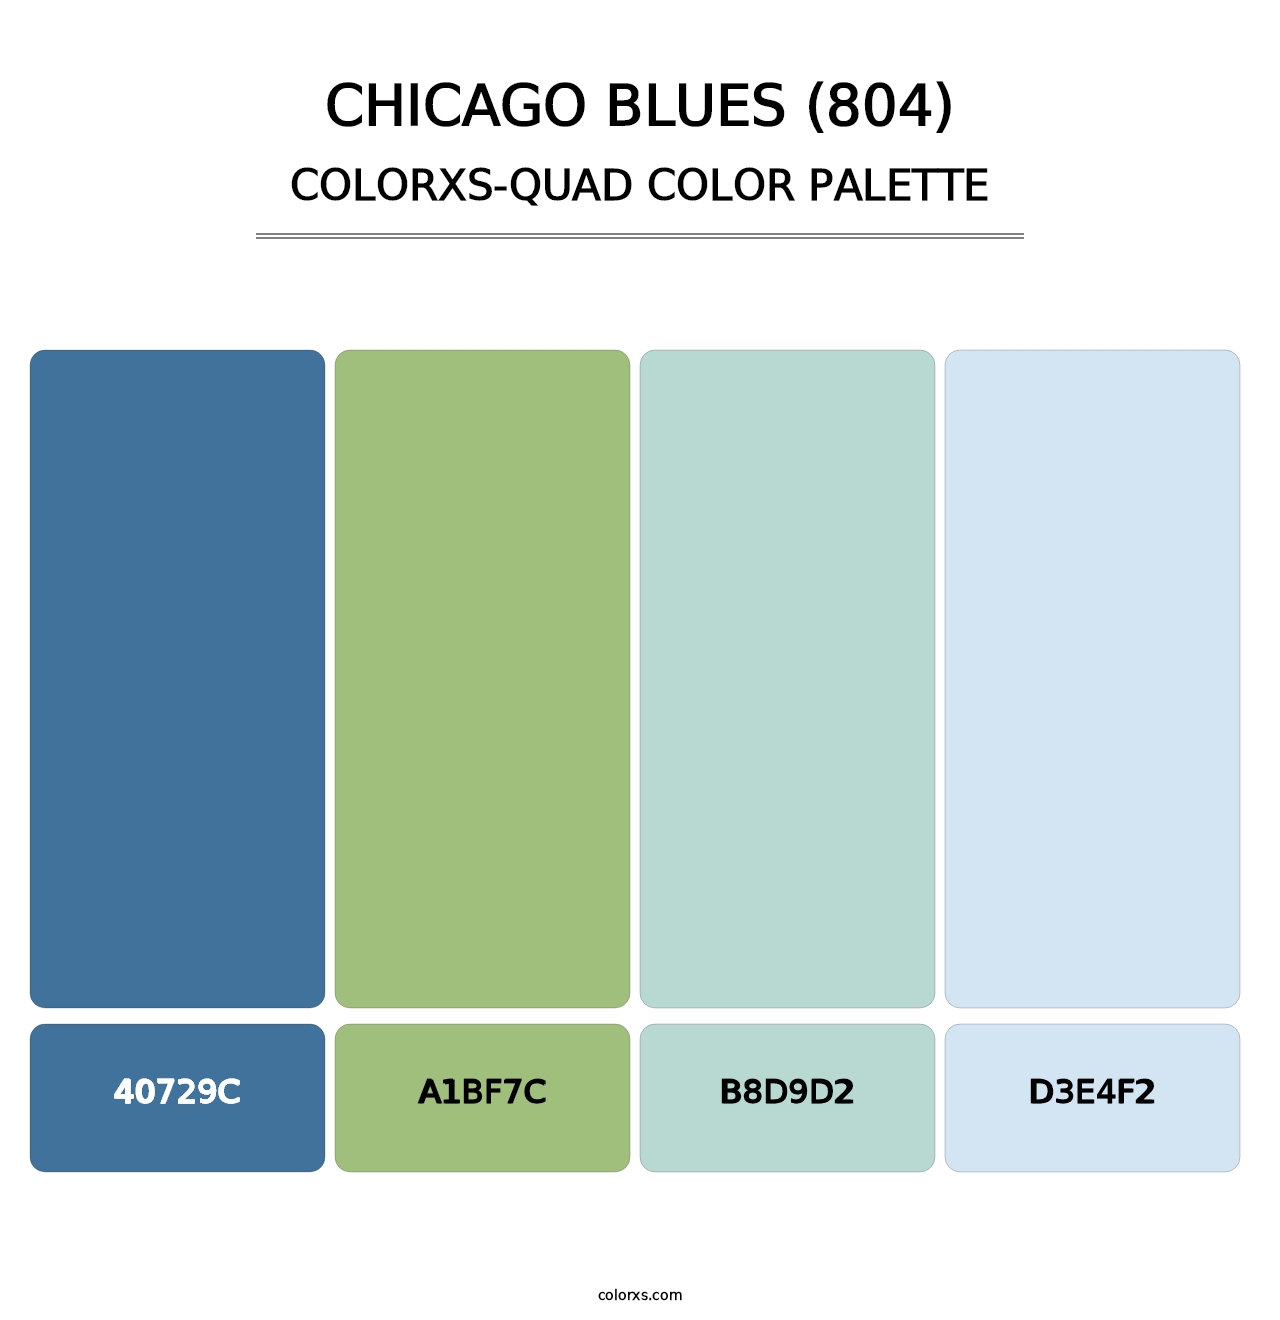 Chicago Blues (804) - Colorxs Quad Palette